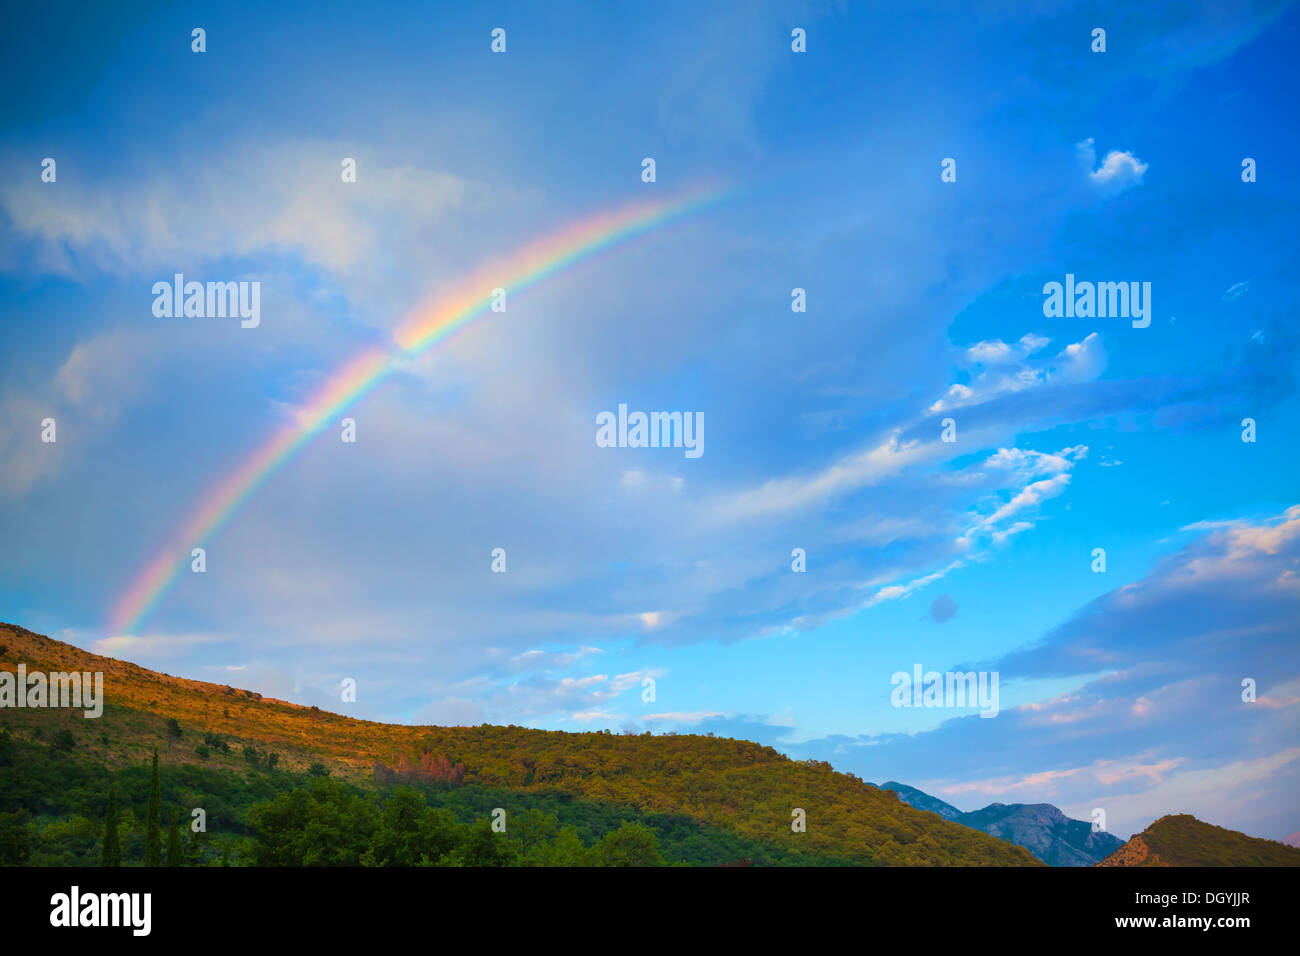 Natur Foto Gebirgshintergrund mit leuchtenden Regenbogen in dramatischen Wolkenhimmel Stockfoto